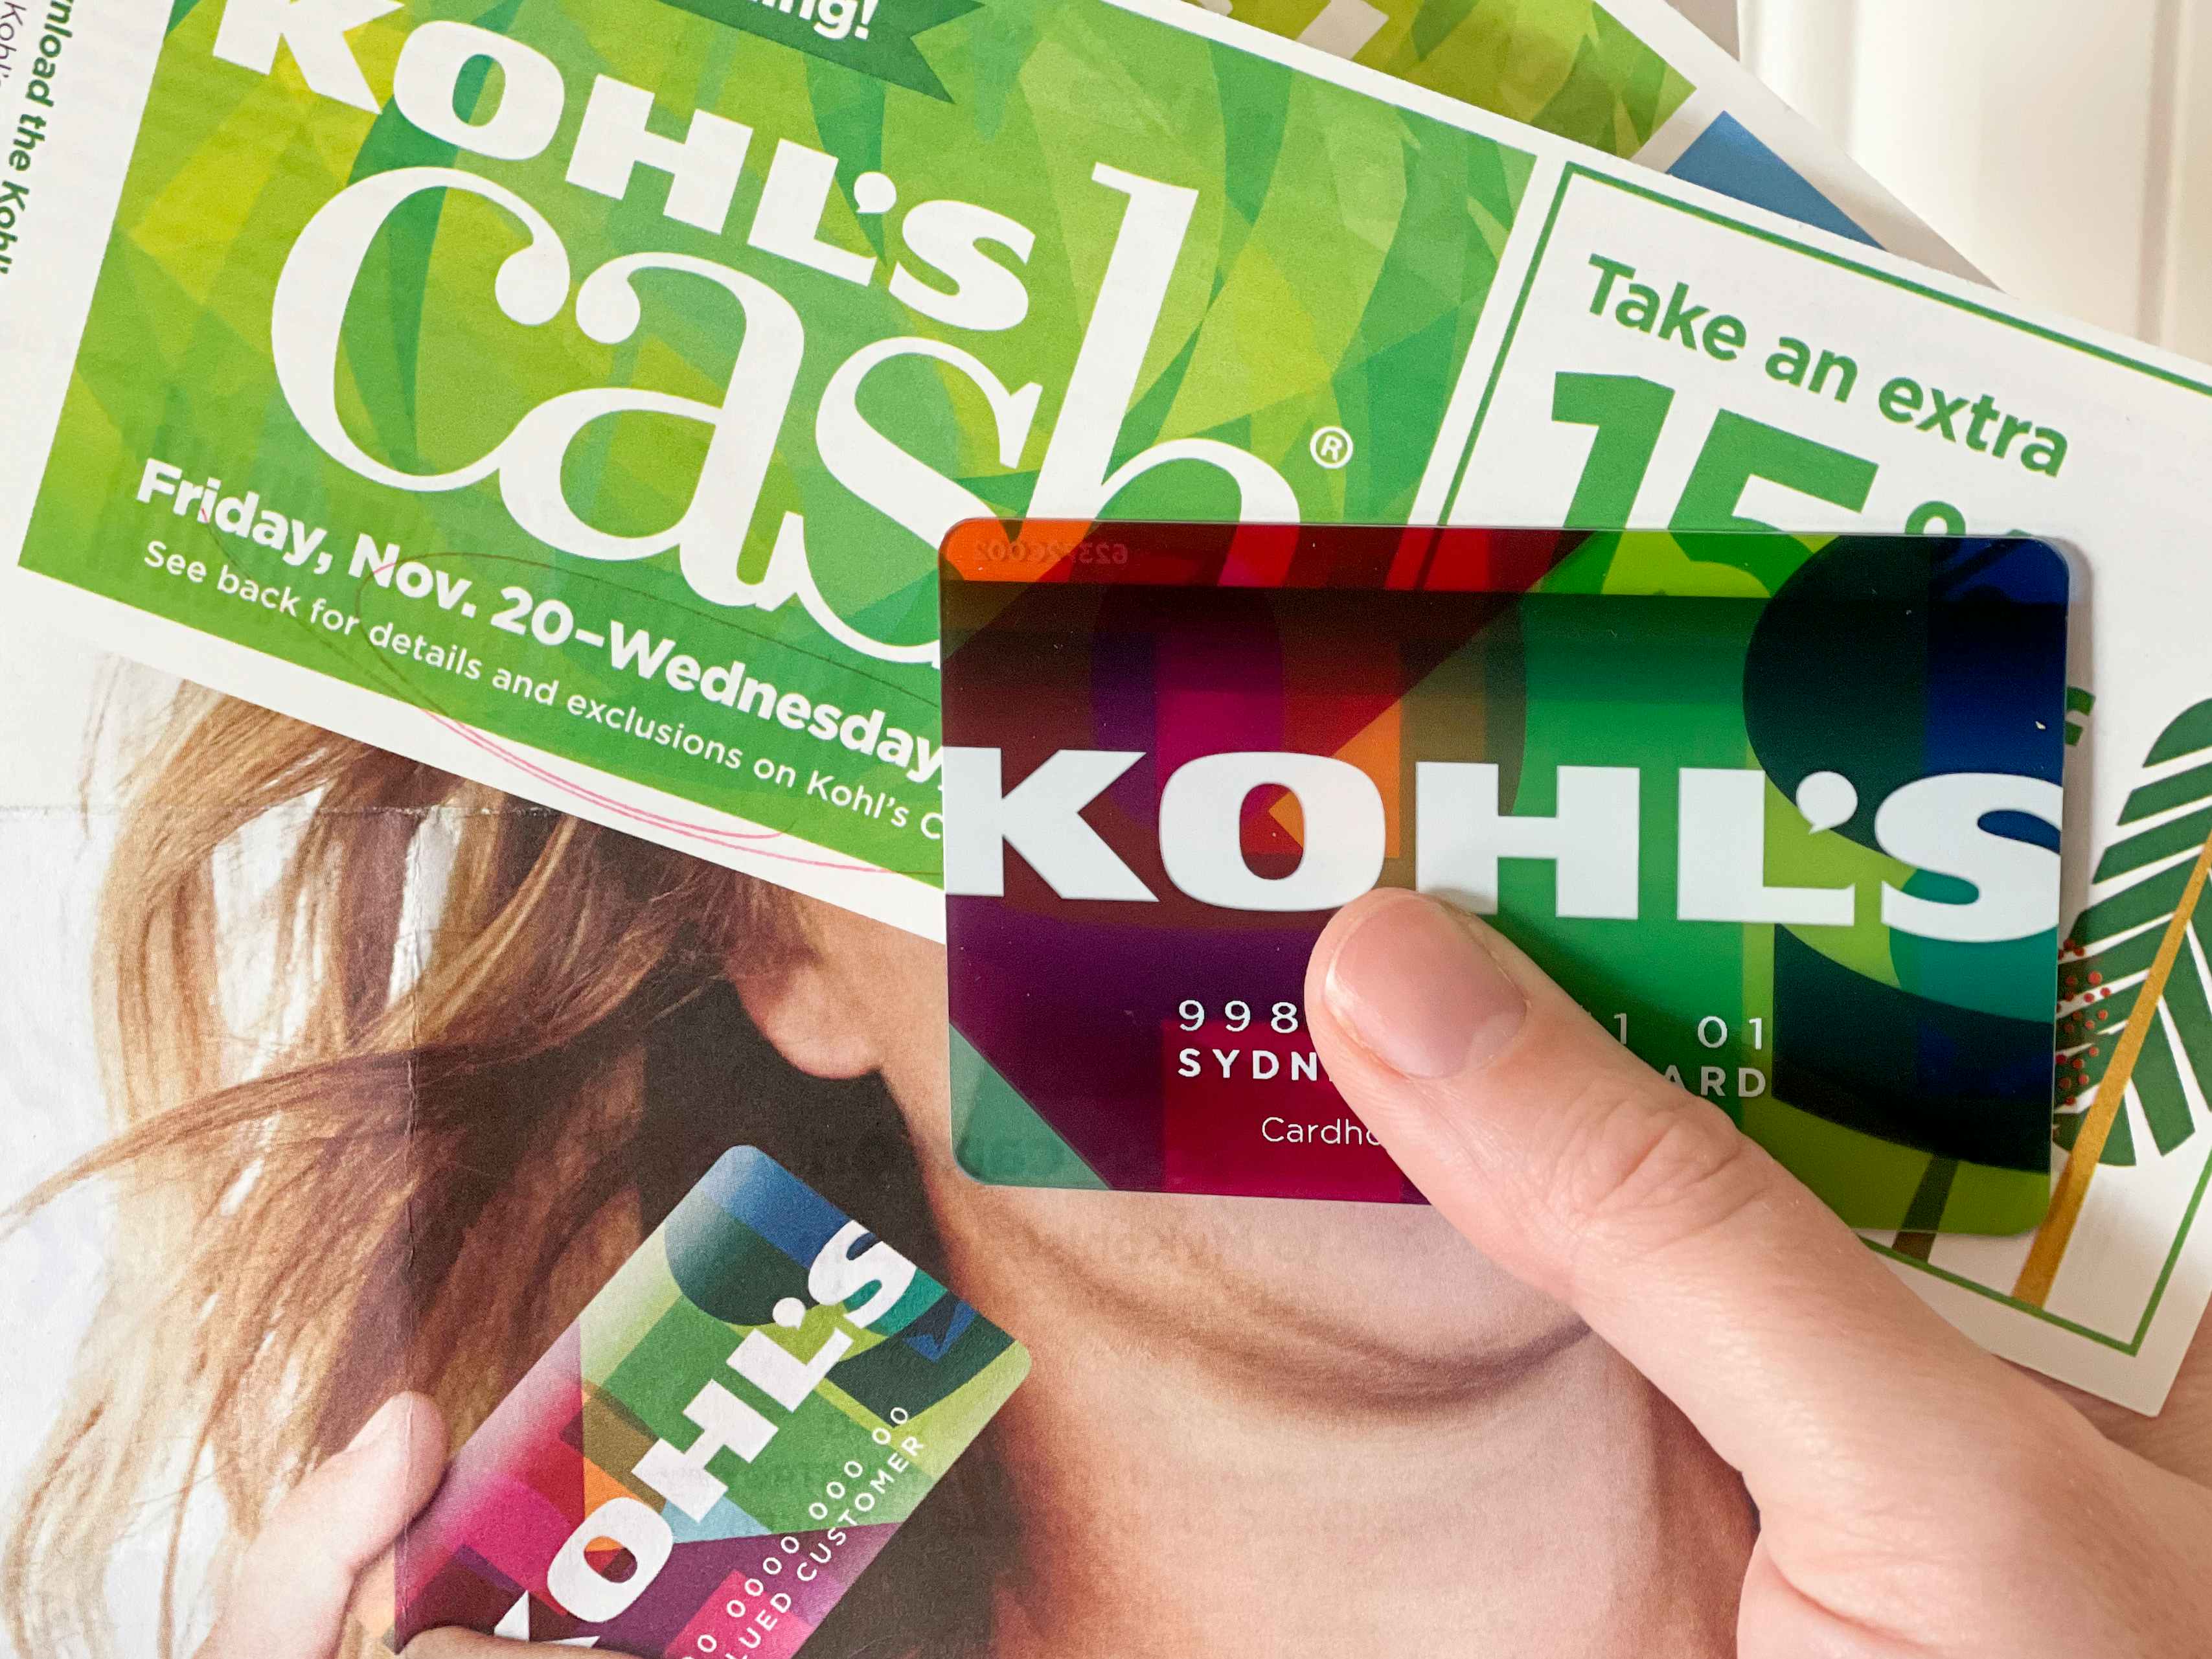 Kohls credit card held with Kohl's Cash.